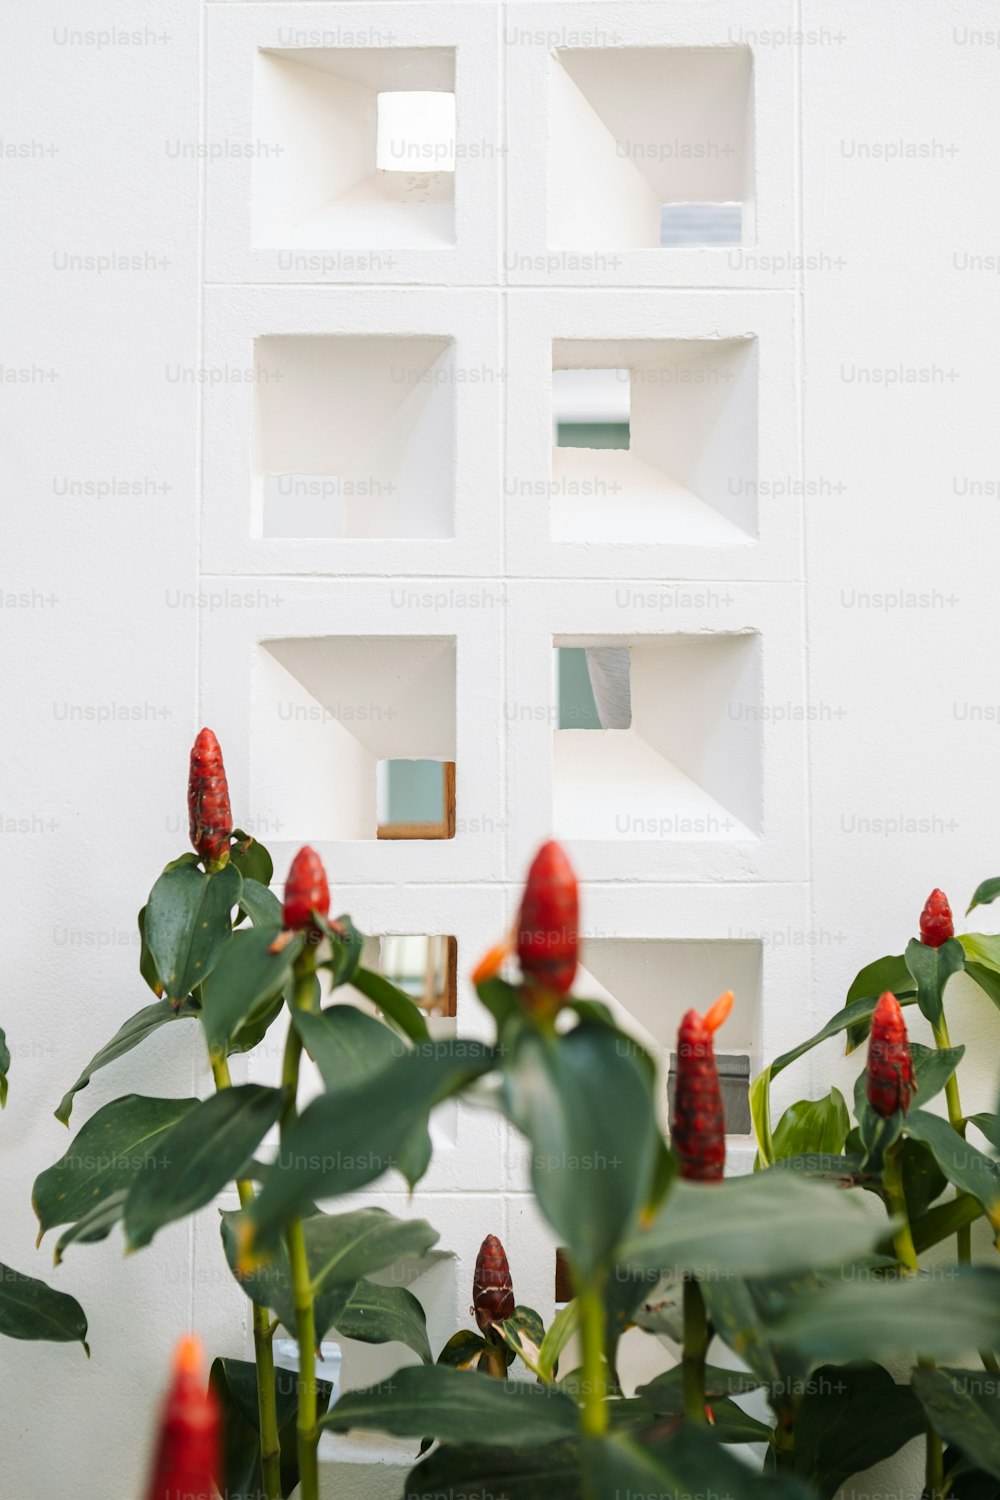 una pianta con fiori rossi davanti a un muro bianco